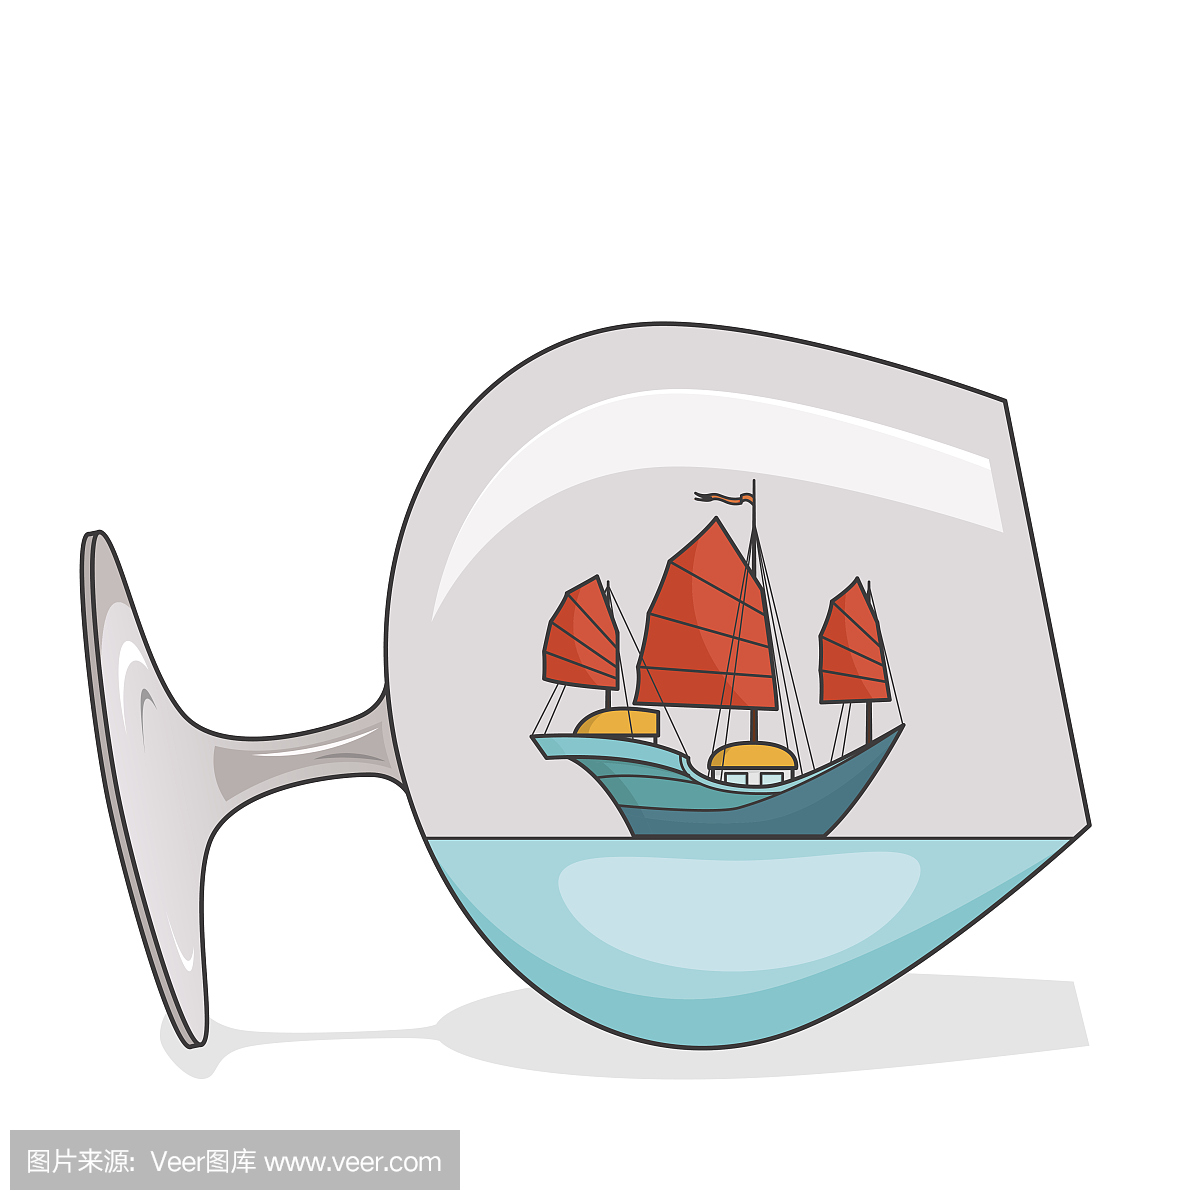 彩色船与红色帆在玻璃。纪念品与帆船旅行,旅